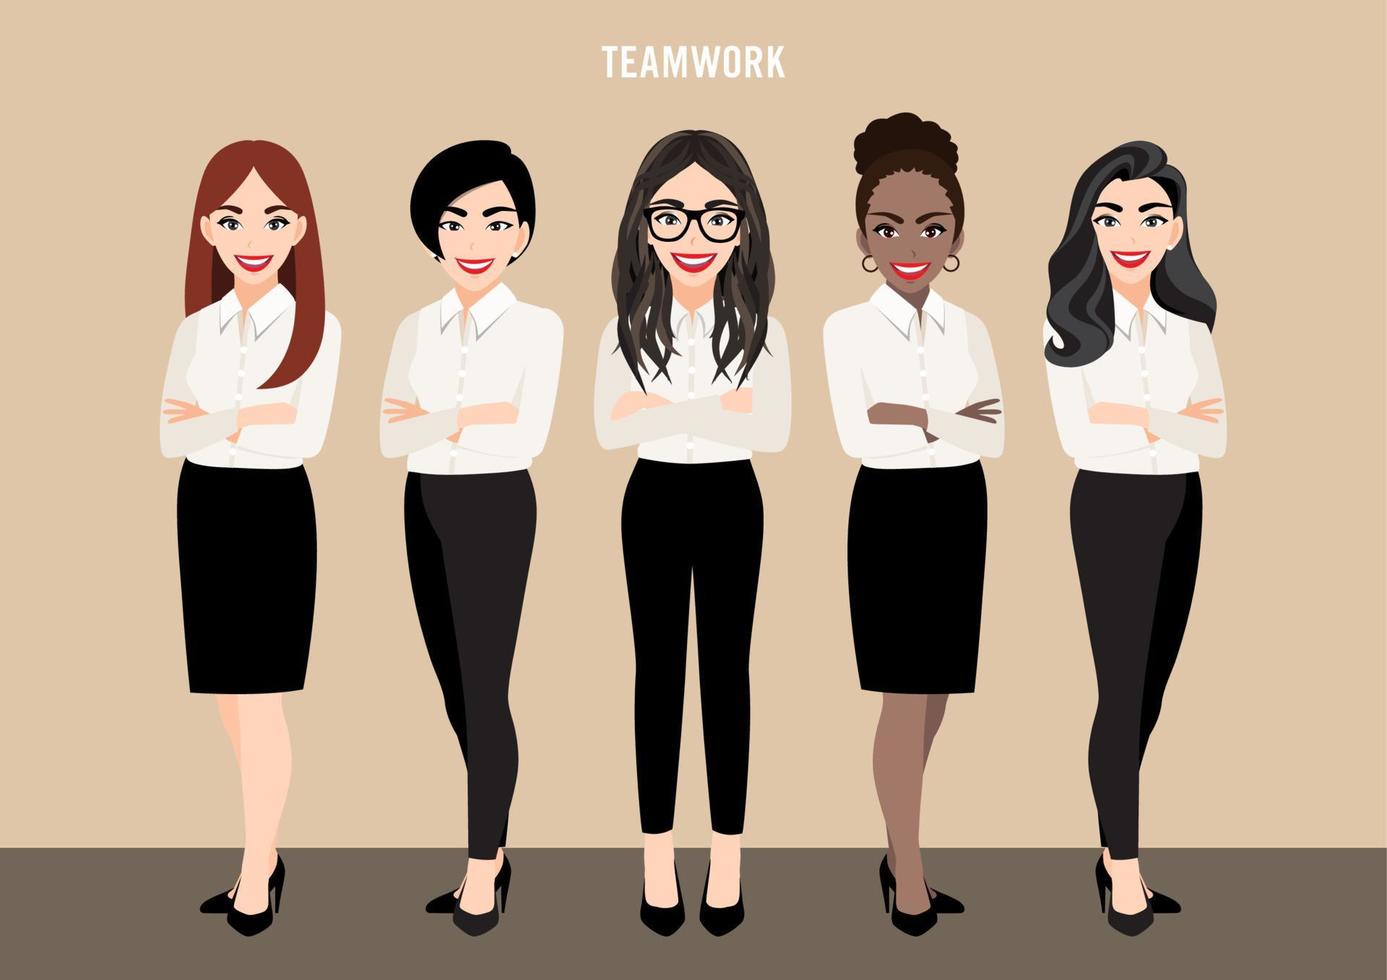 stripfiguur met zakelijke teamset of leiderschapsconcept met zakenvrouwen. vectorillustratie in cartoon-stijl. vector